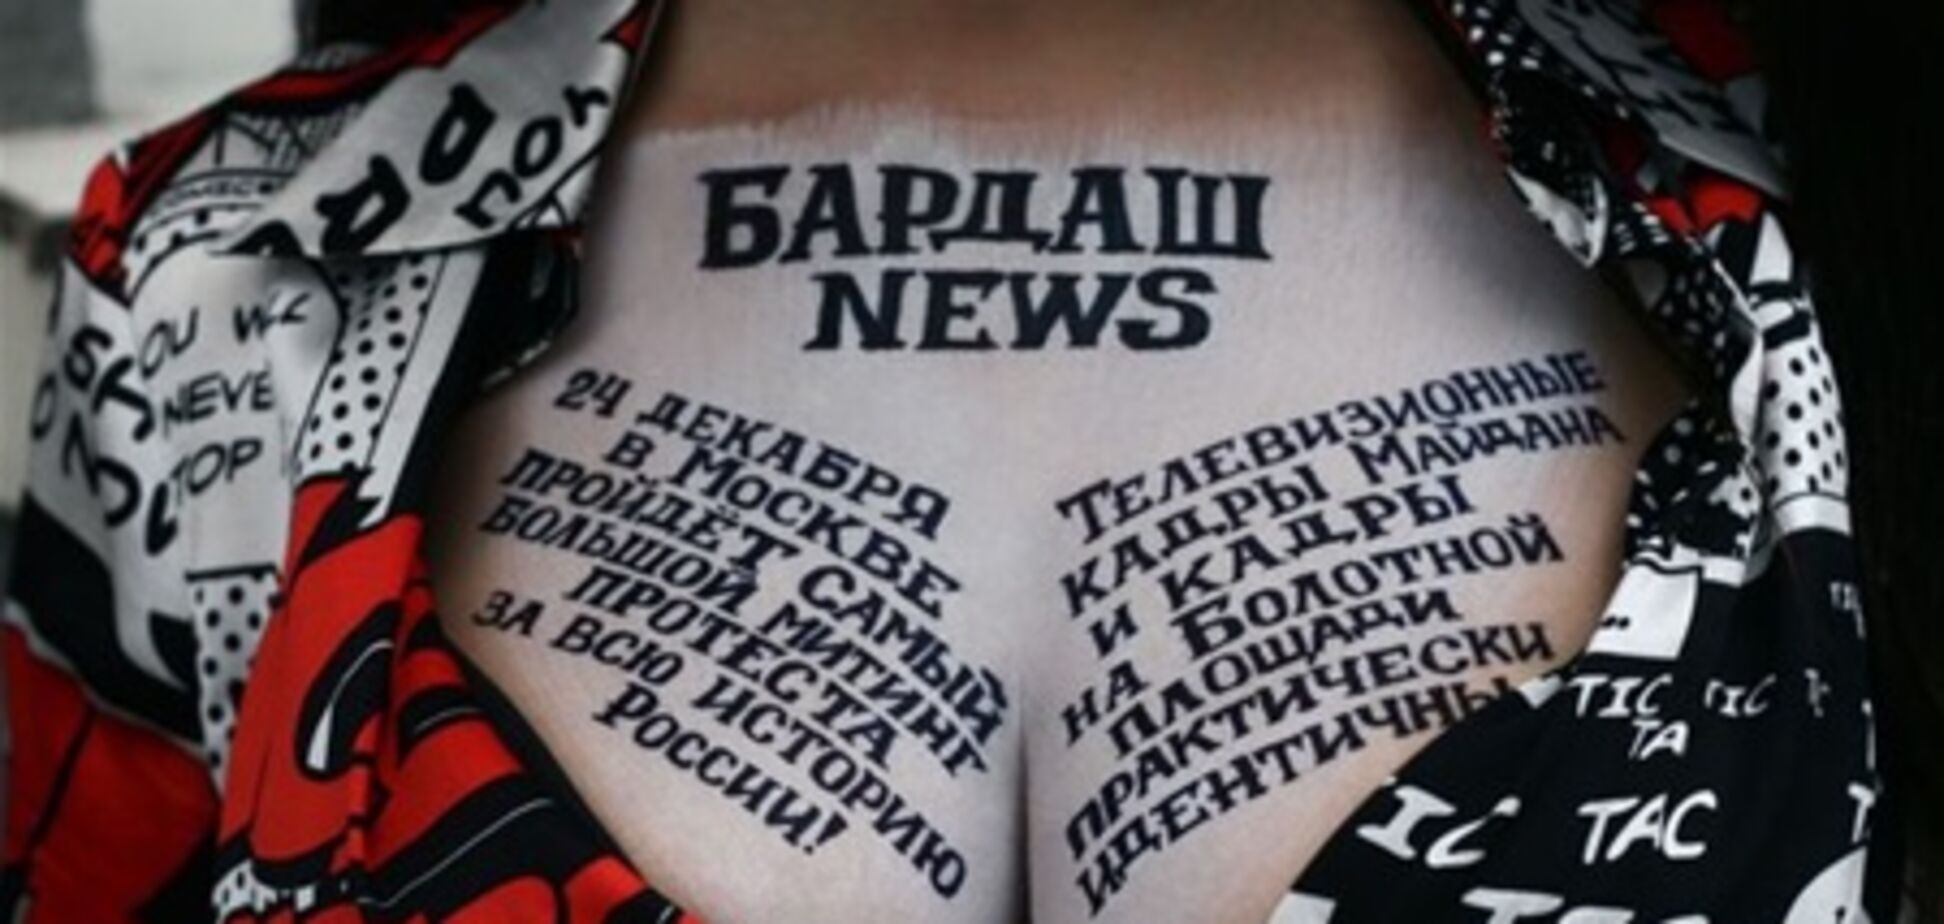 Бардаш написала на груди о российской революции